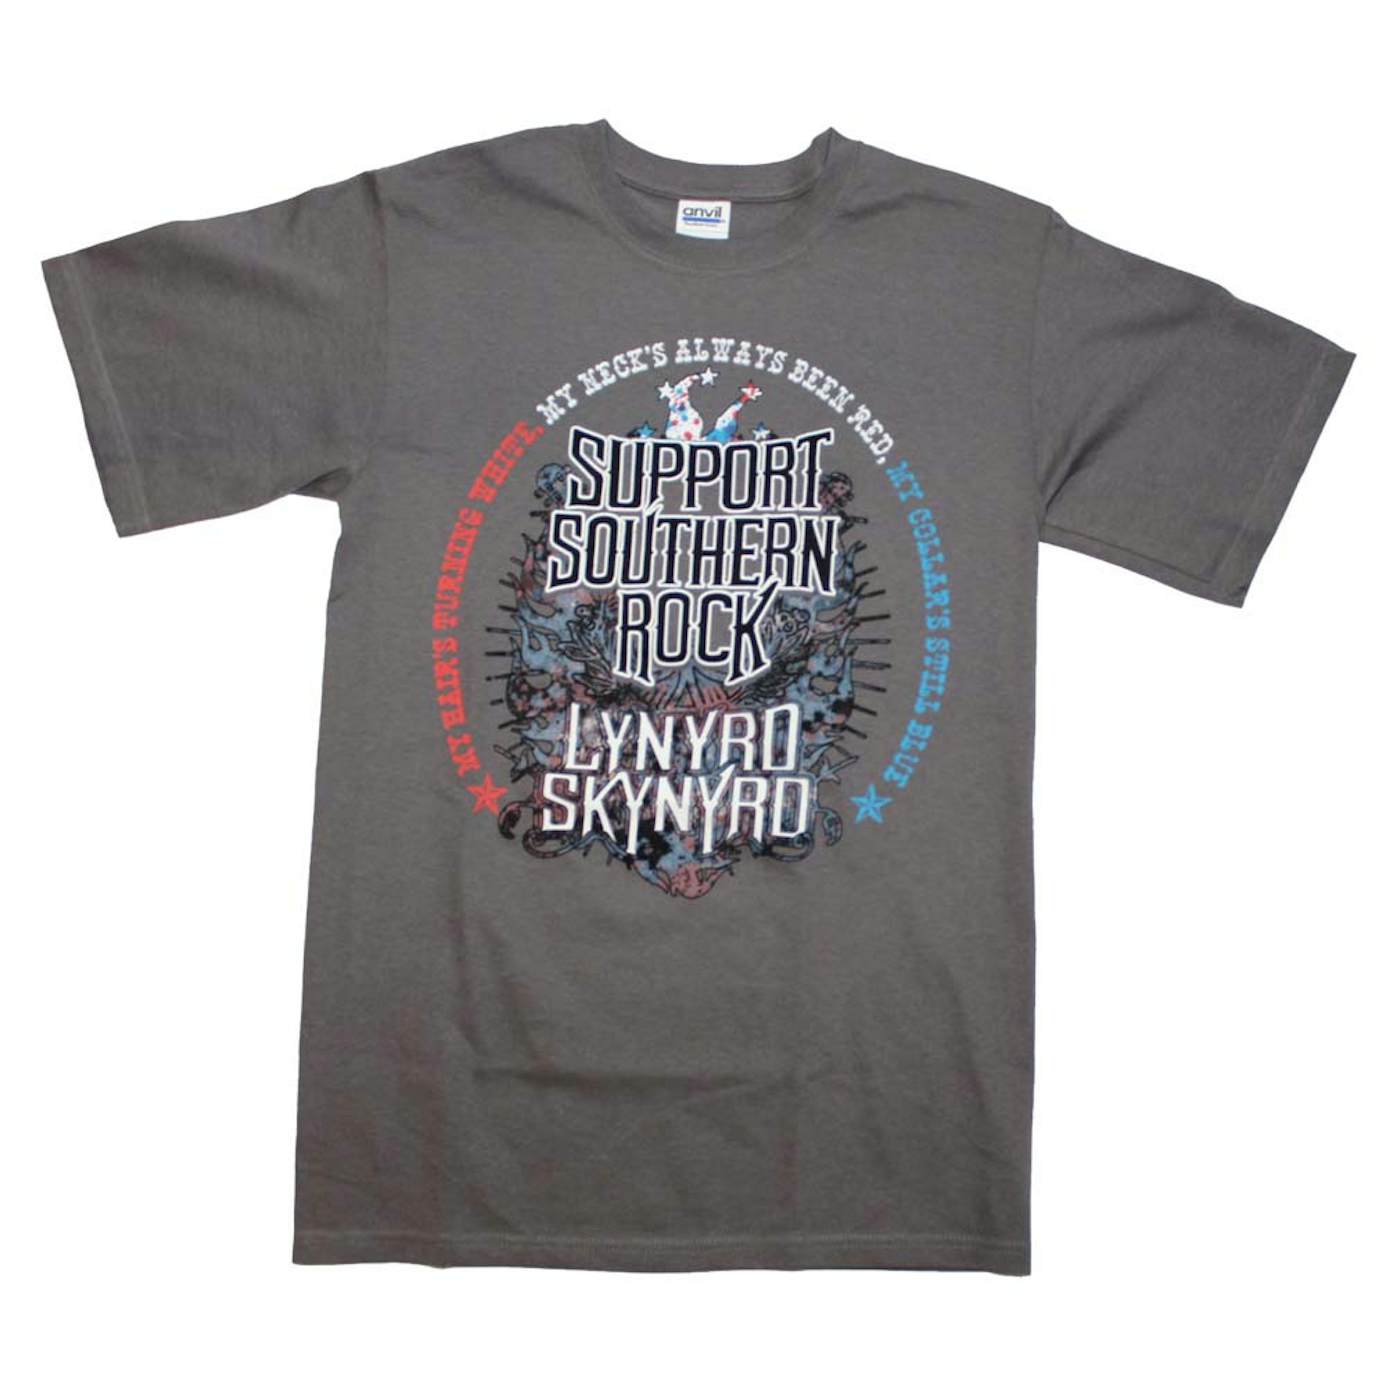 Lynyrd Skynyrd T Shirt | Lynyrd Skynyrd Support Southern Rock T-Shirt